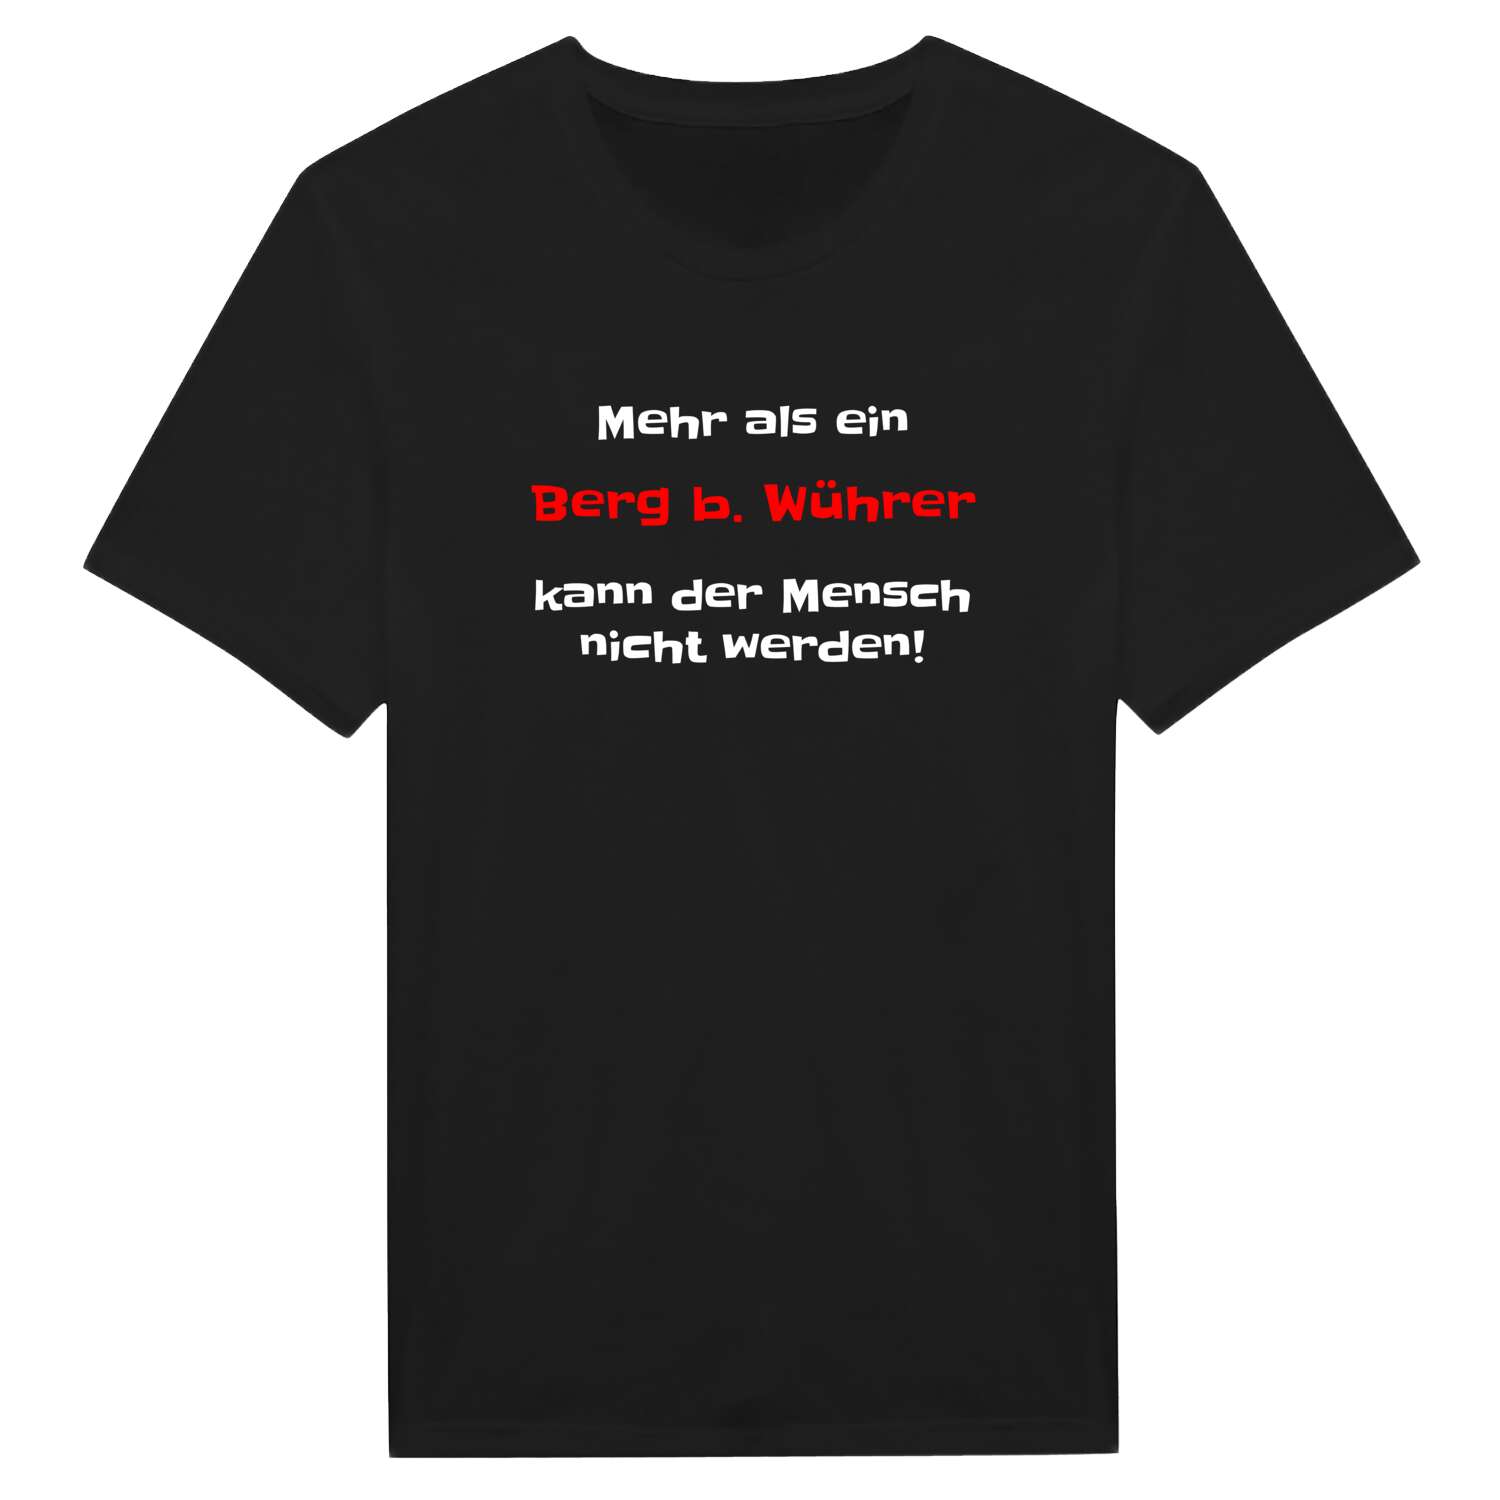 Berg b. Wühr T-Shirt »Mehr als ein«